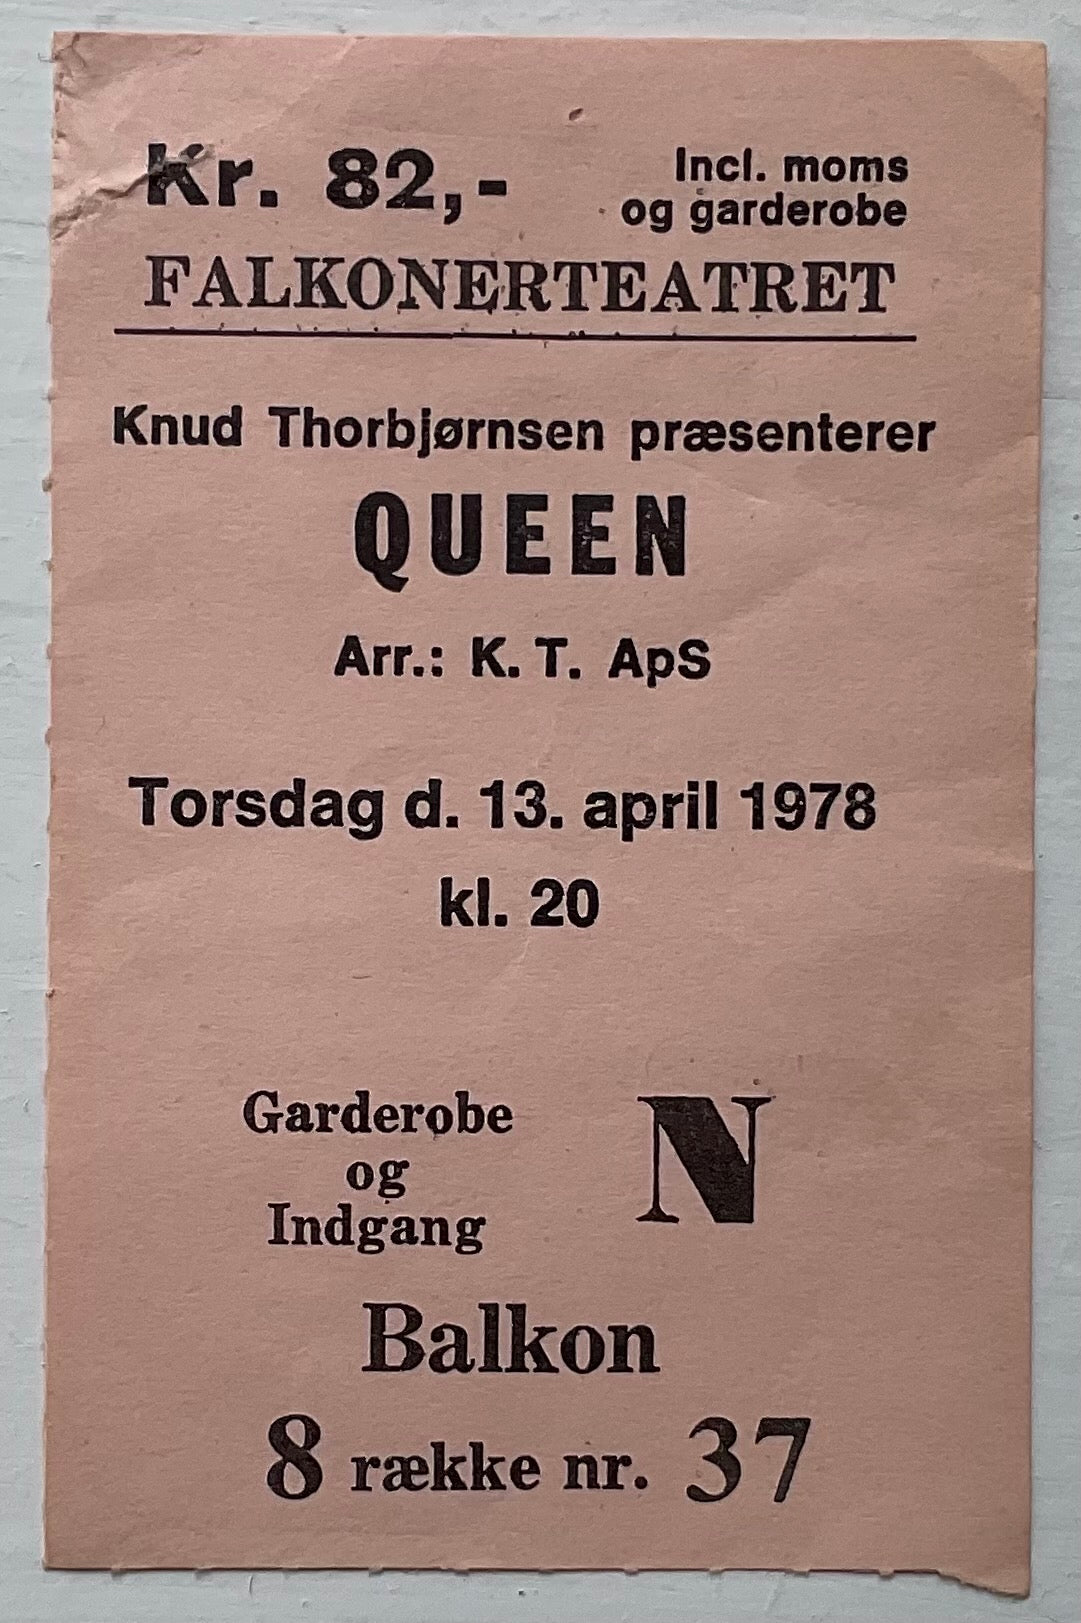 Queen Original Used Concert Ticket Falkonerteatret Copenhagen 13th Apr 1978